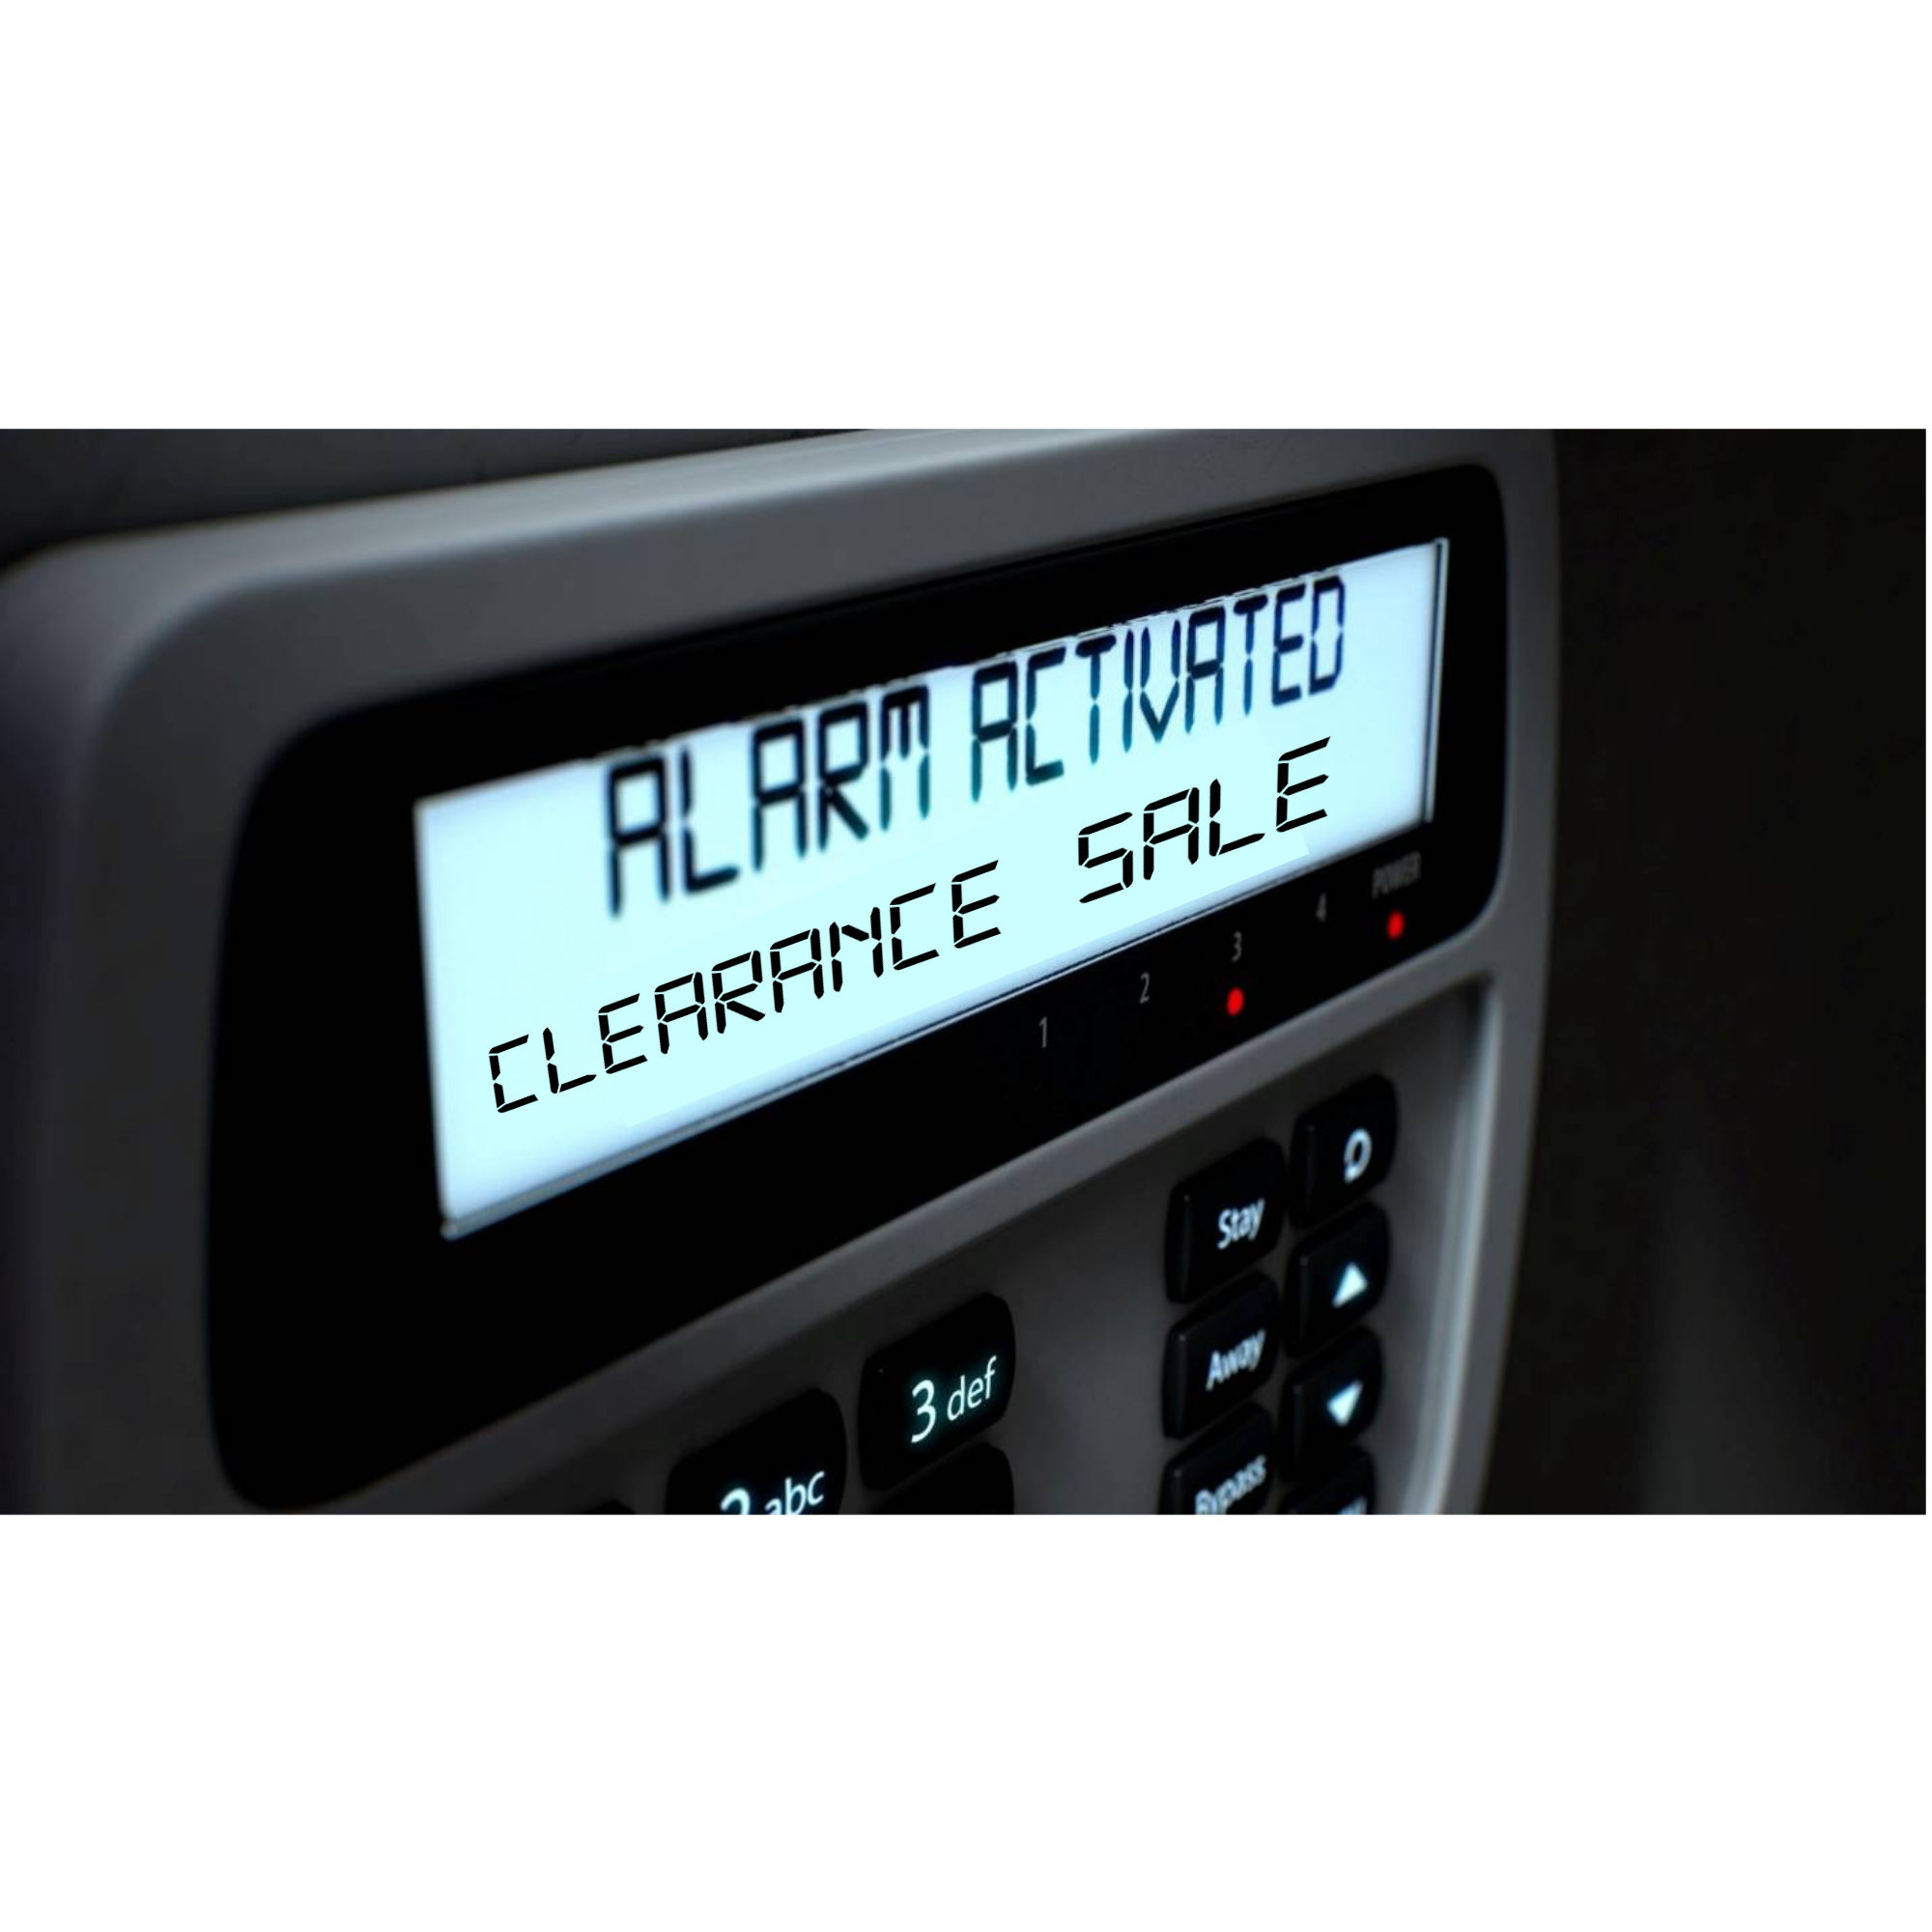 Clearance - Alarm